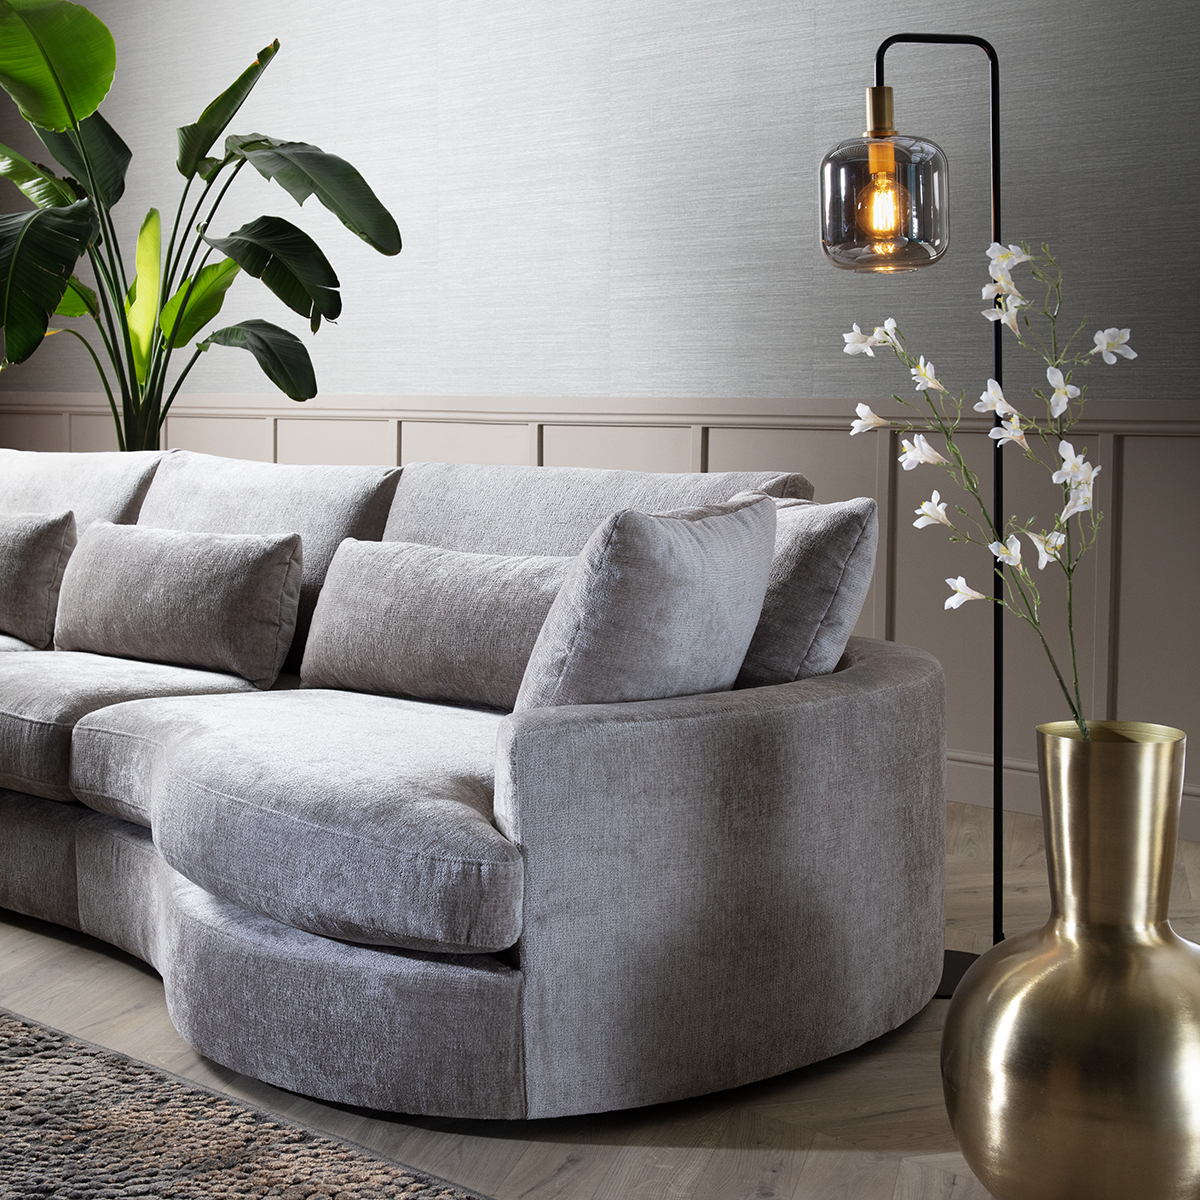 De nieuwste meubeltrend: organische vormen brengen natuurlijke elegantie in je interieur